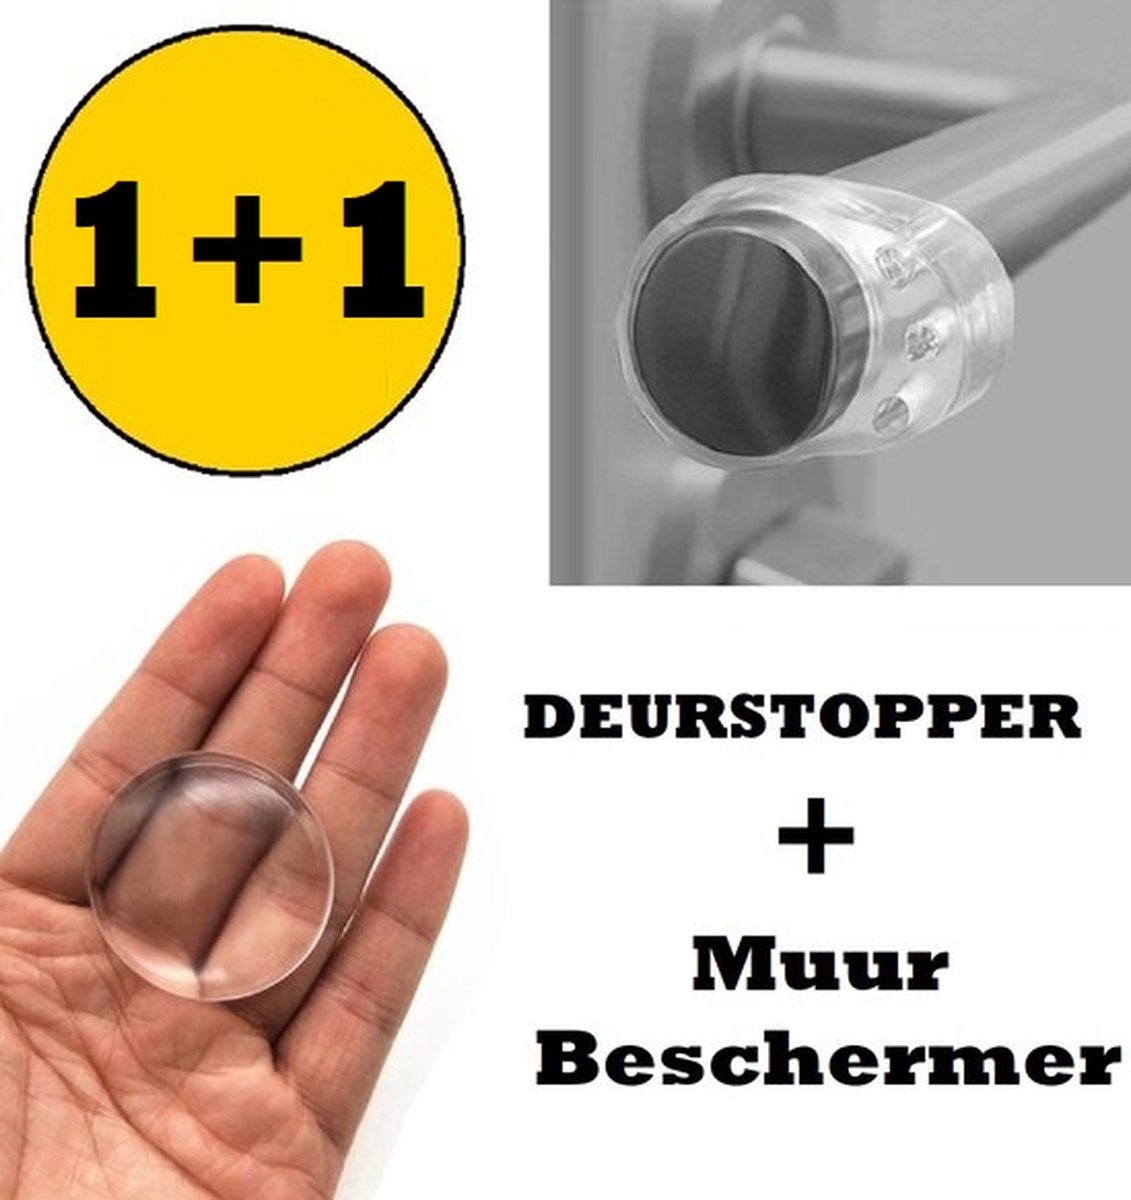 Deurstopper- Muurbeschermer - Deurbuffer - 1+1 - deurbeschermer - Deurklink - deur ring - Equantu®